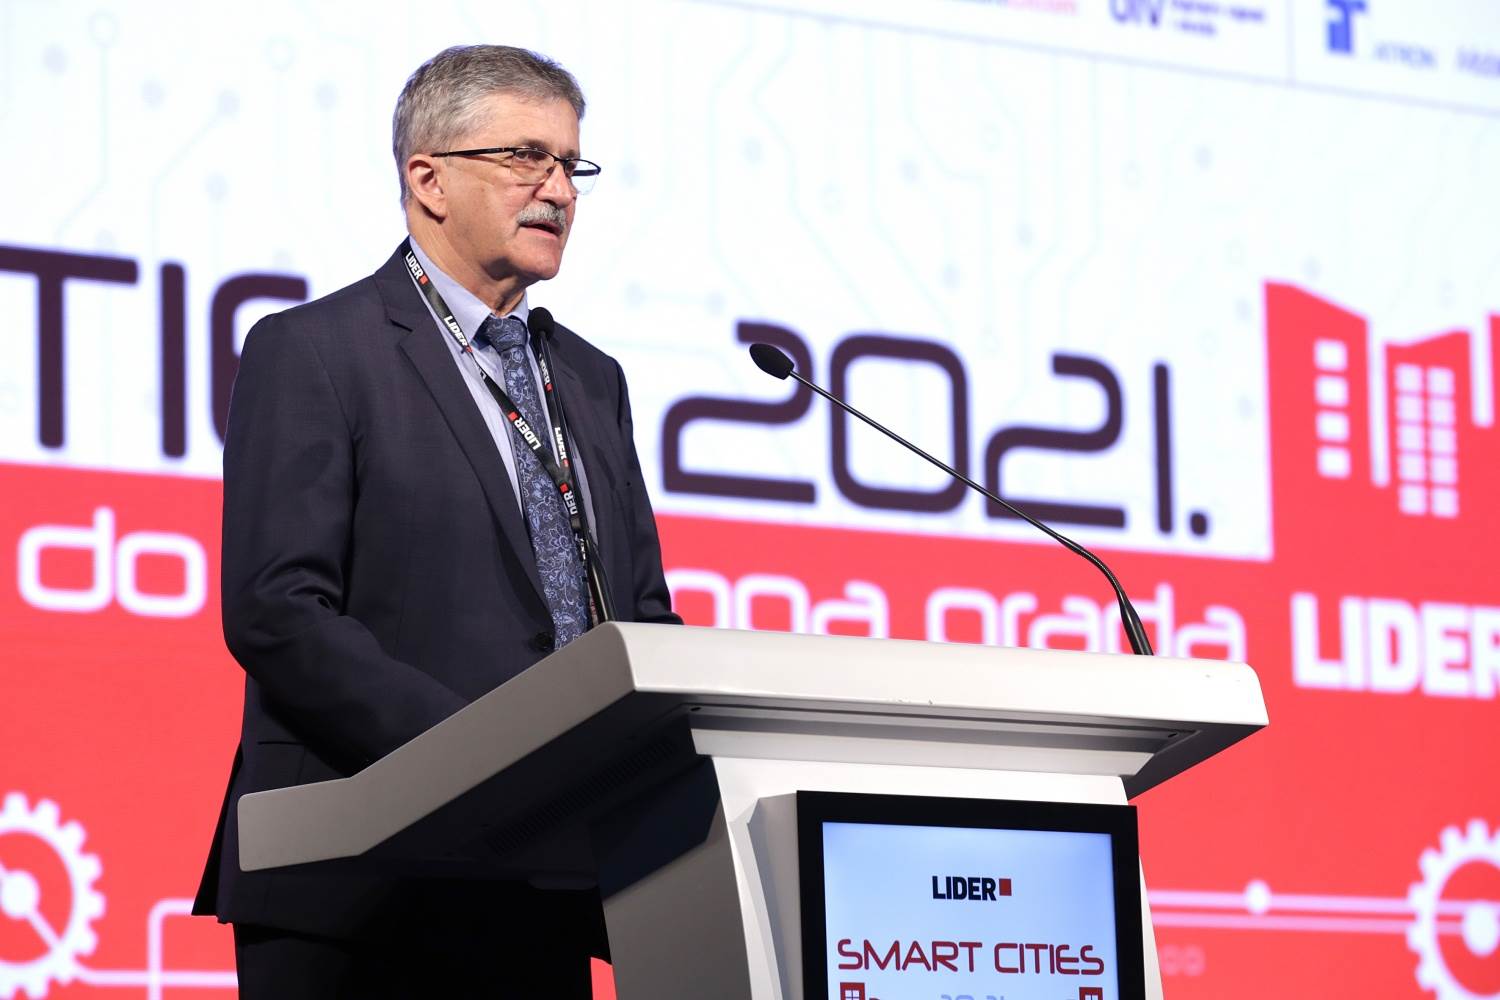  Smart cities 2022 (1).jpg 